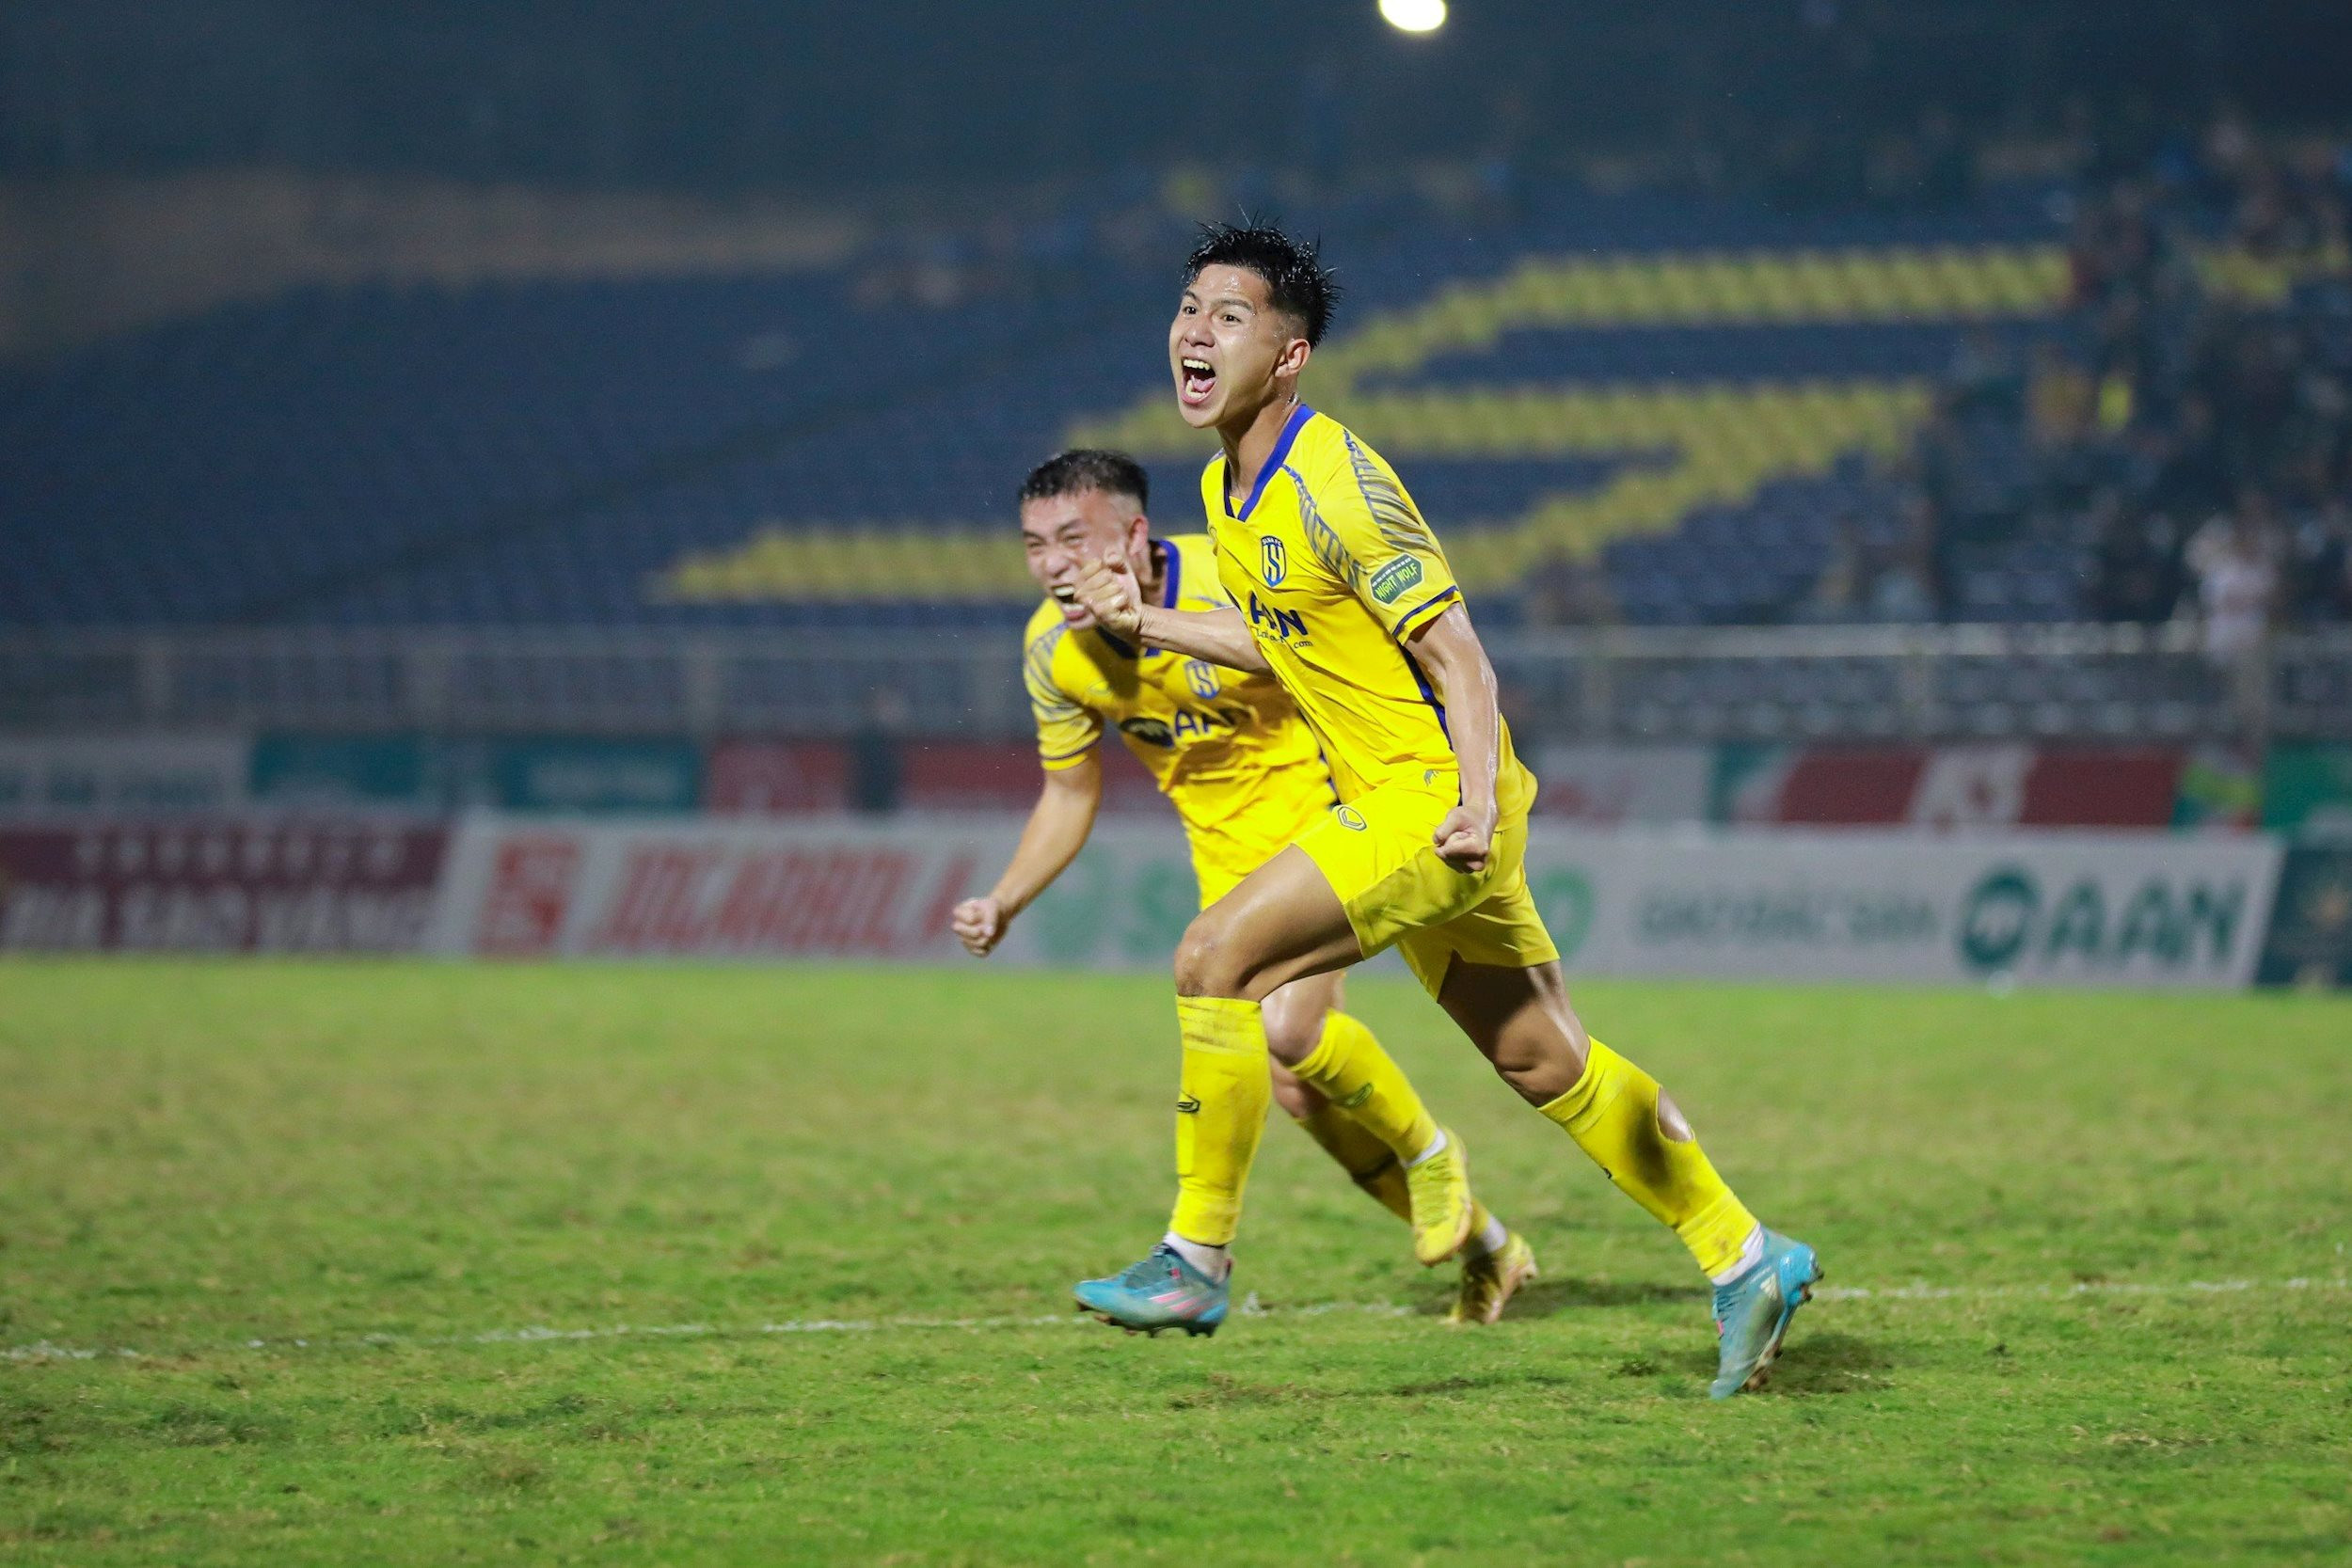 Ảnh 2: Phan Bá Quyền đánh đầu ghi bàn vào lưới Quy Nhơn Bình Định cũng là bàn thắng đầu tiên của anh tại sân chơi V.League. Ảnh: Chung Lê